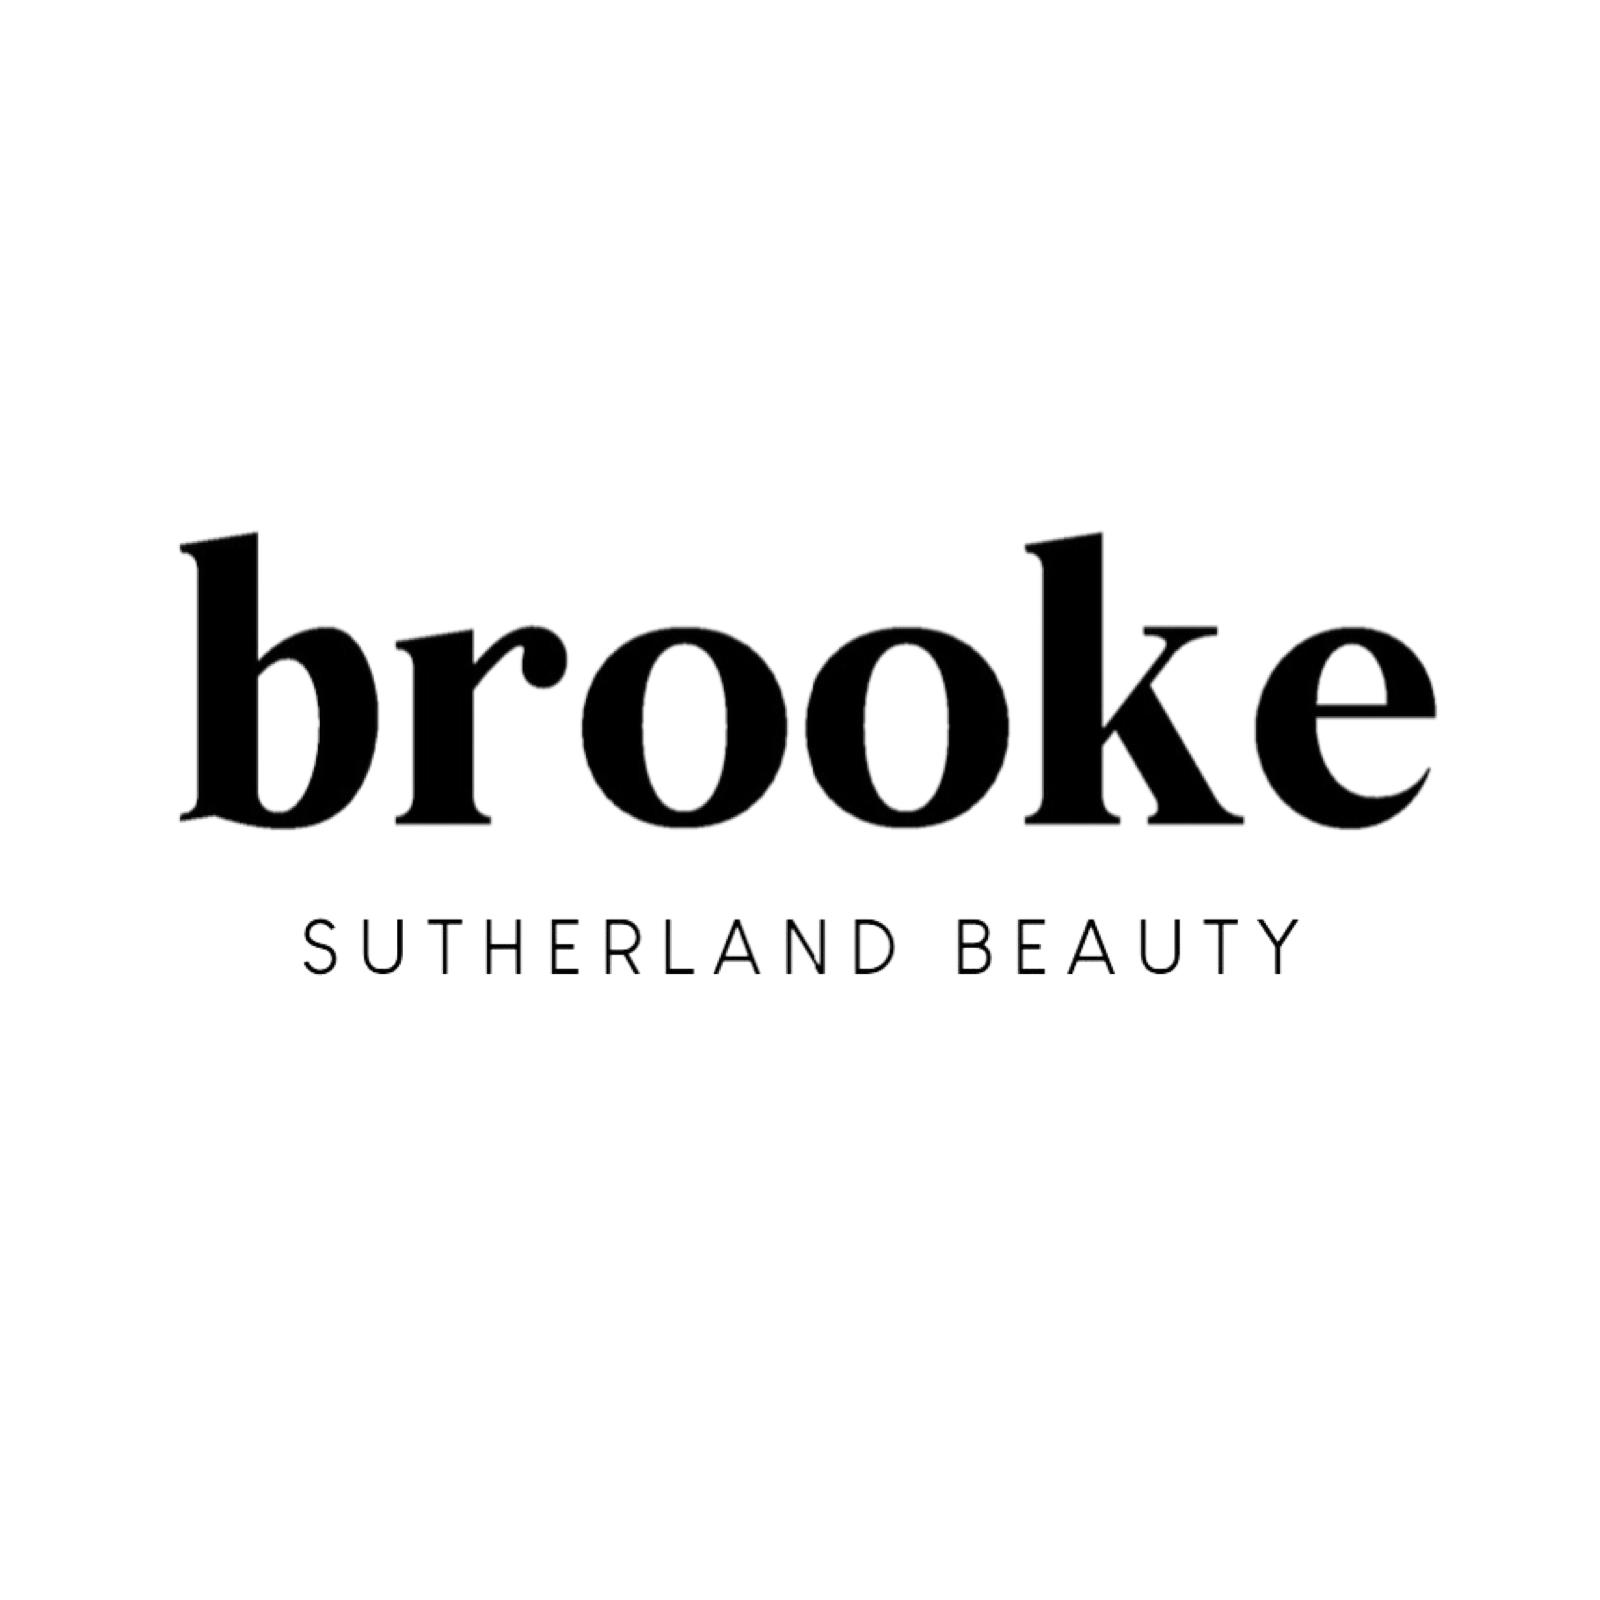 Brooke Sutherland Beauty